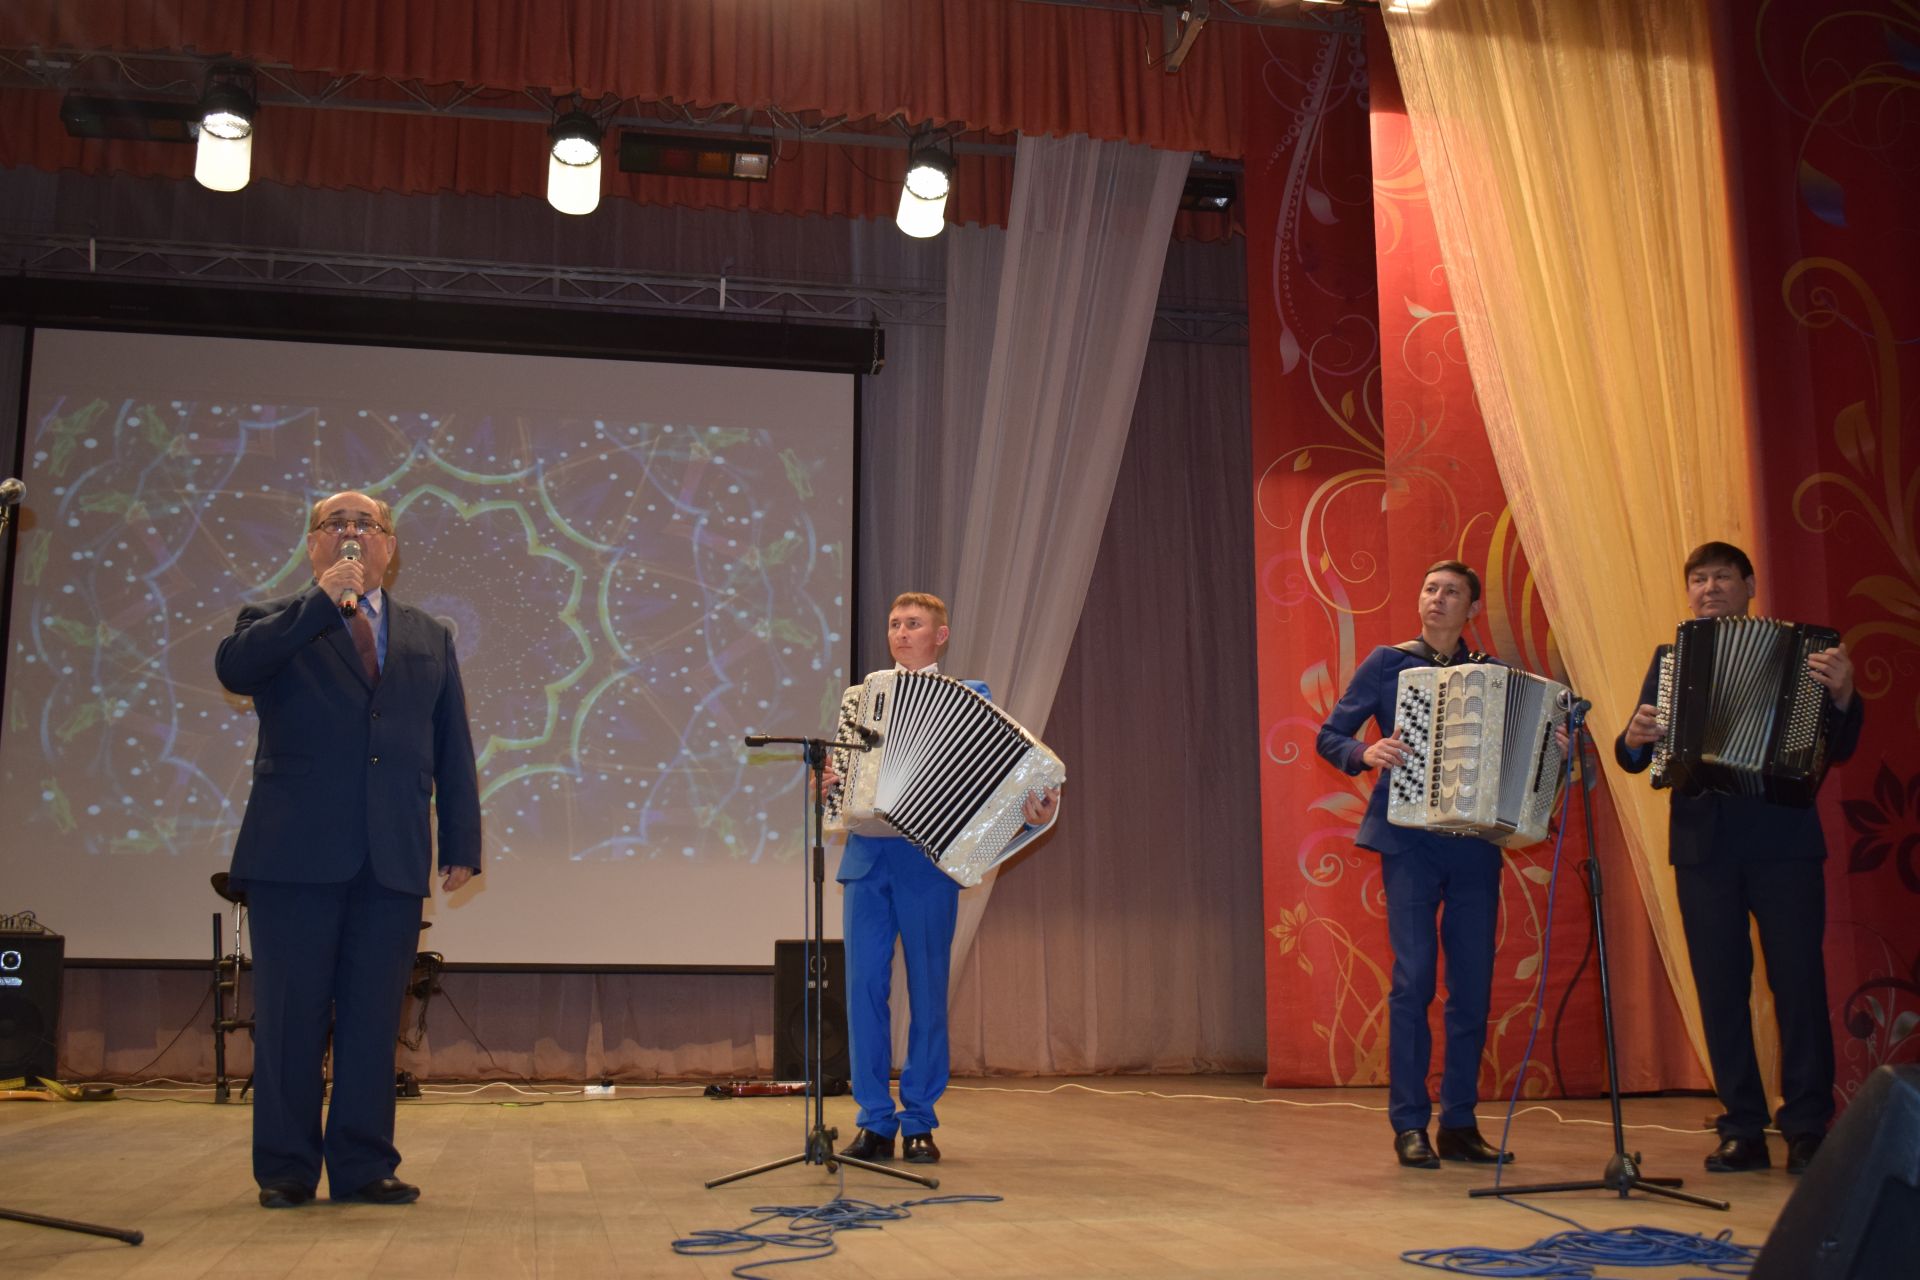 В Азнакаево состоялся гала-концерт конкурса народной песни «Халкым моннары»